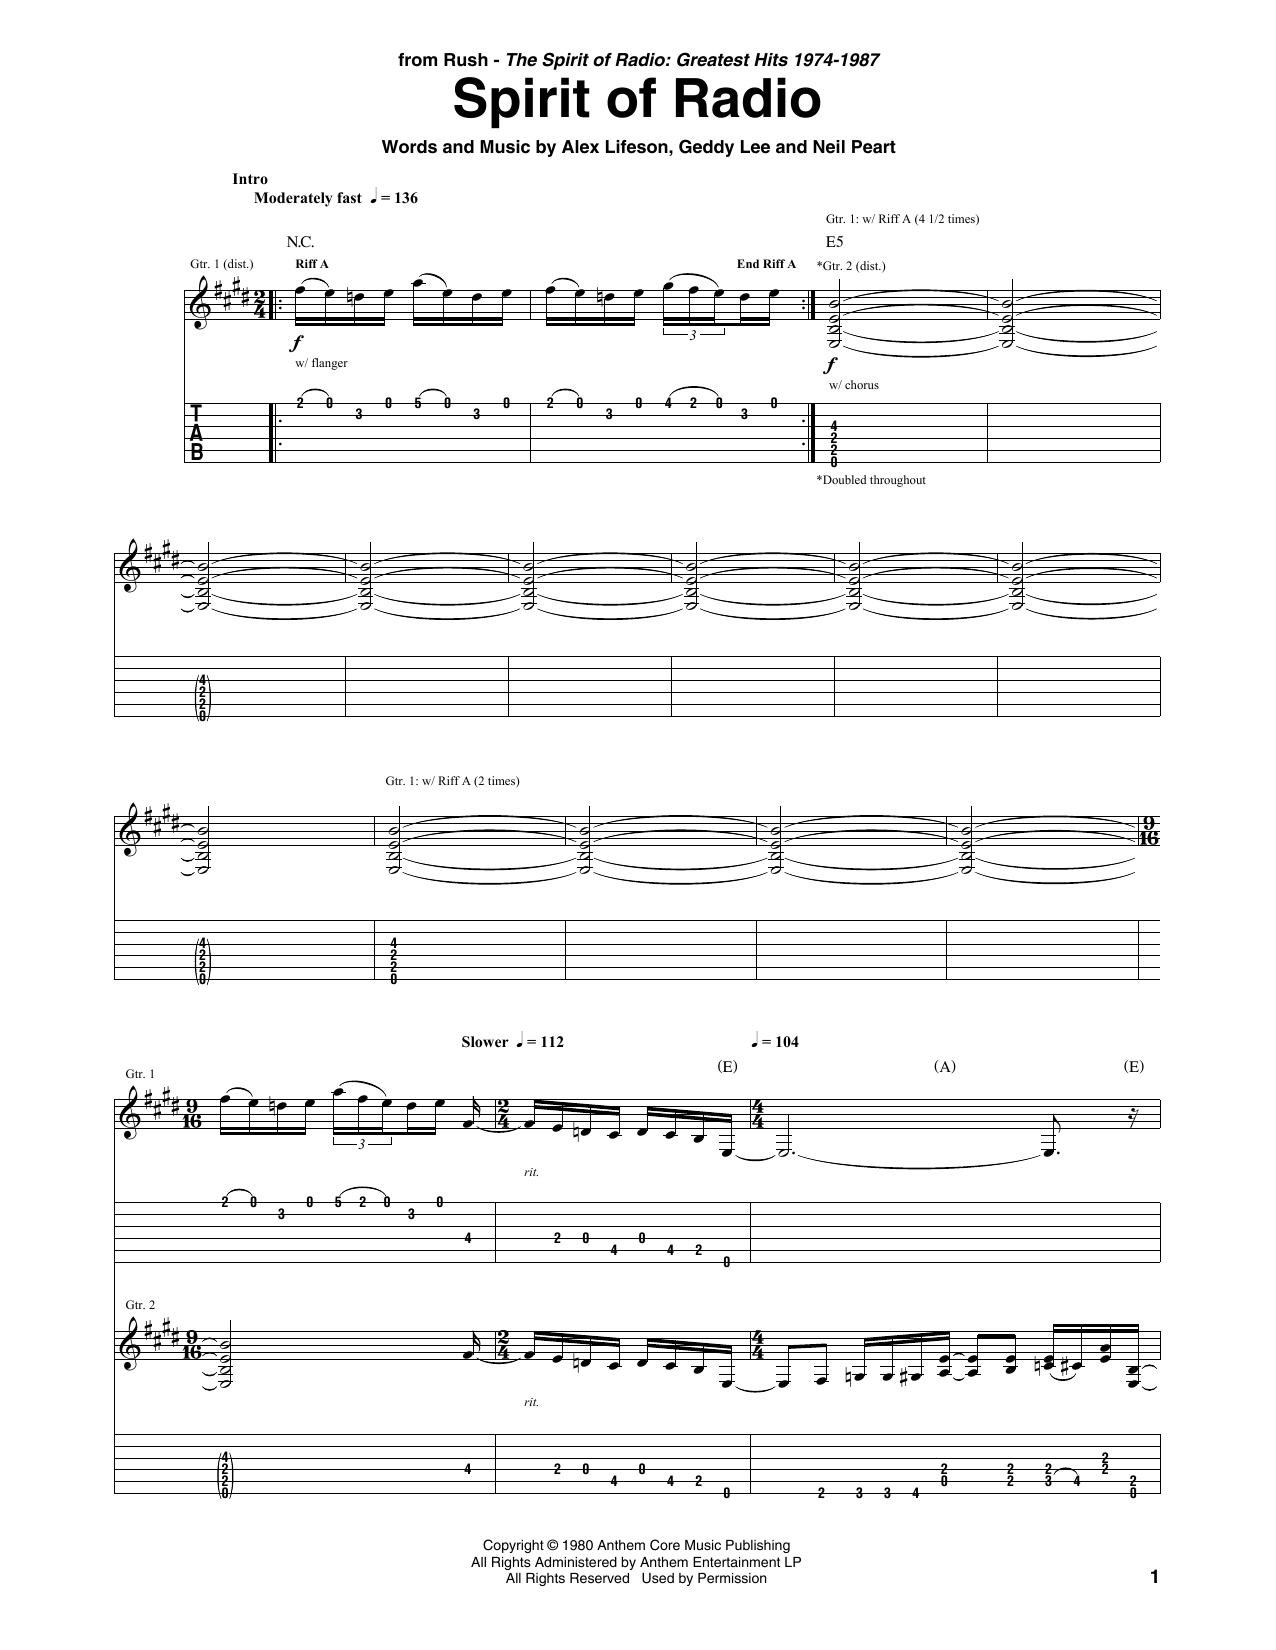 Rush Spirit Of Radio Sheet Music Notes & Chords for Guitar Tab - Download or Print PDF